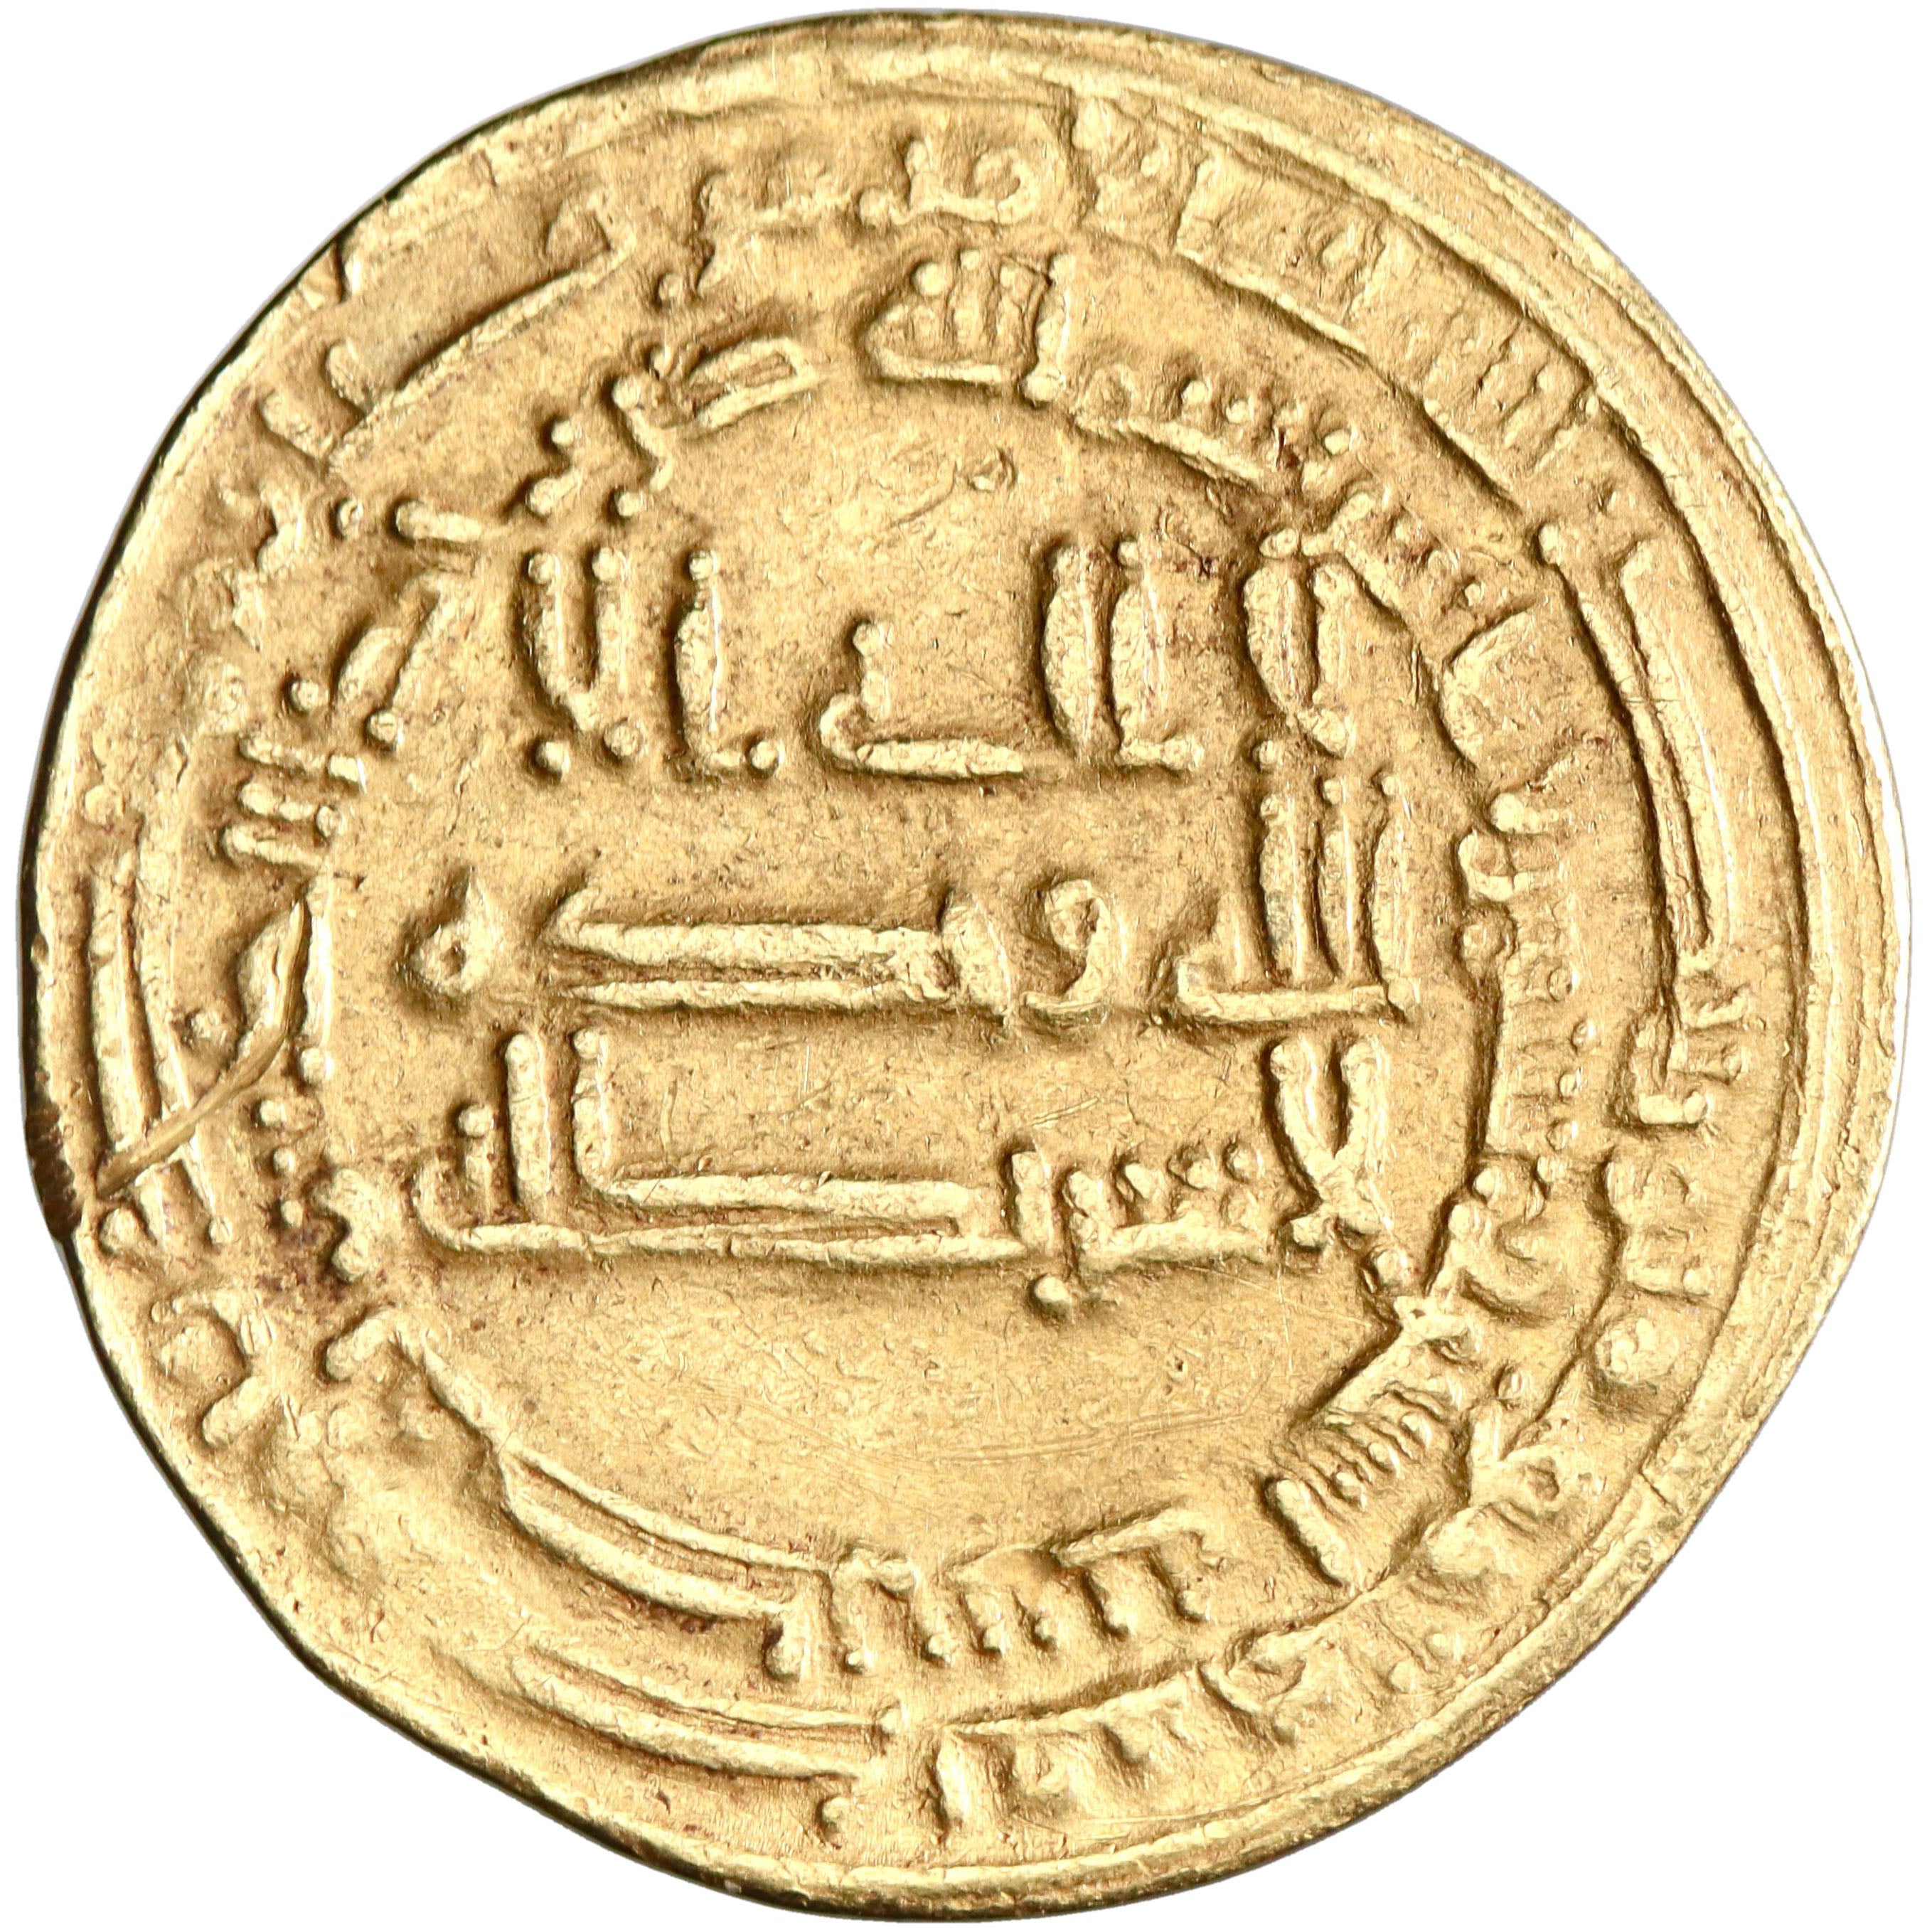 Abbasid, al-Mu'tasim, gold dinar, Misr (Egypt) mint, AH 222